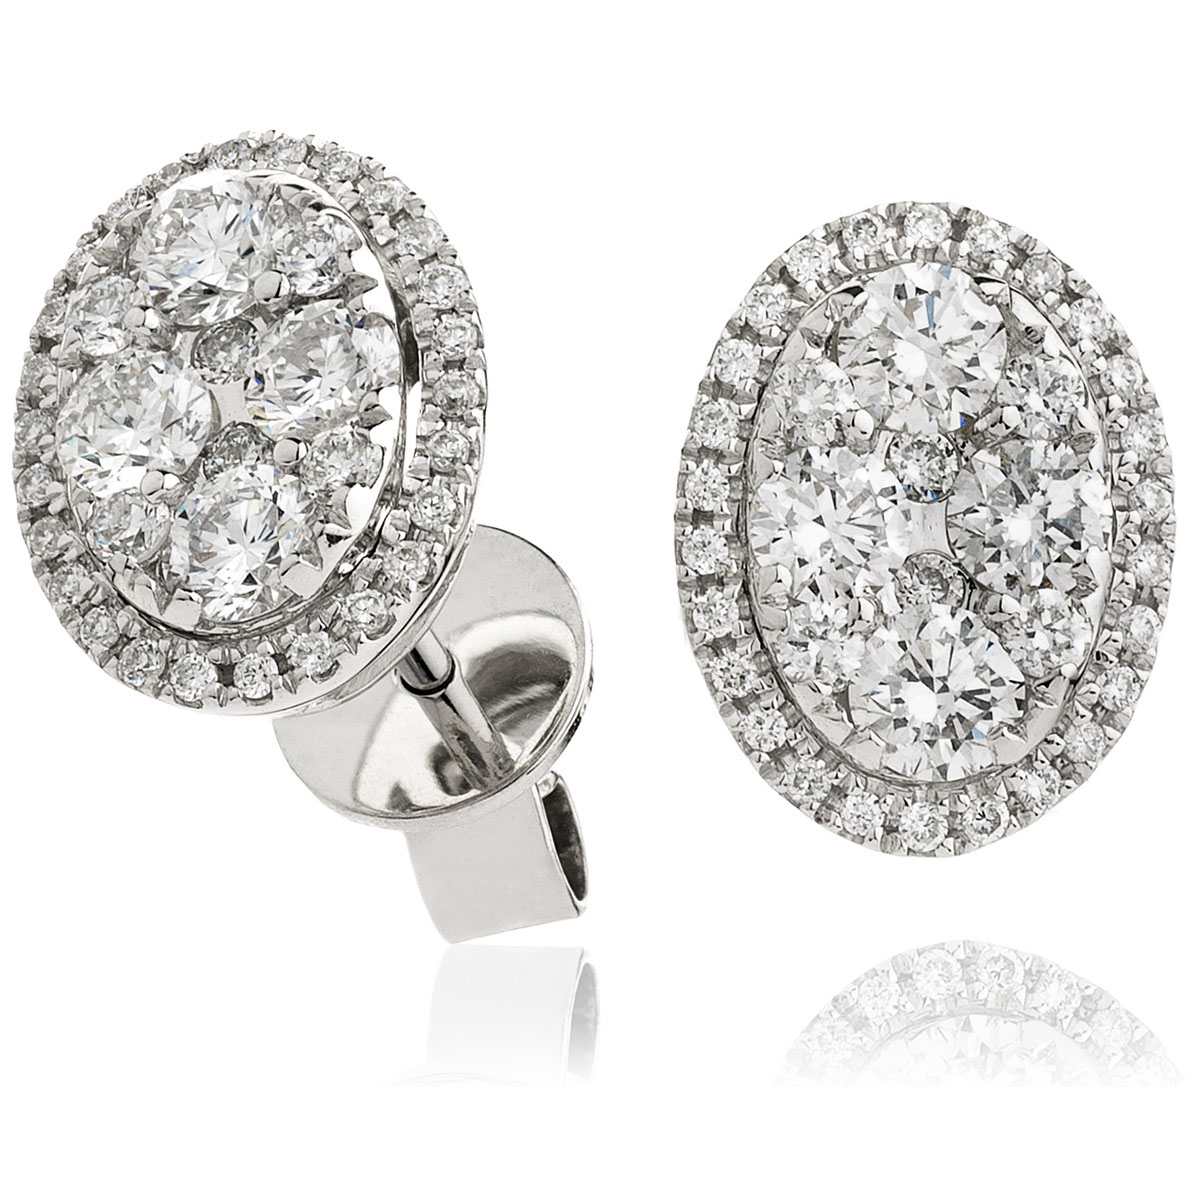 Large Pave Set Diamond Earrings Studs